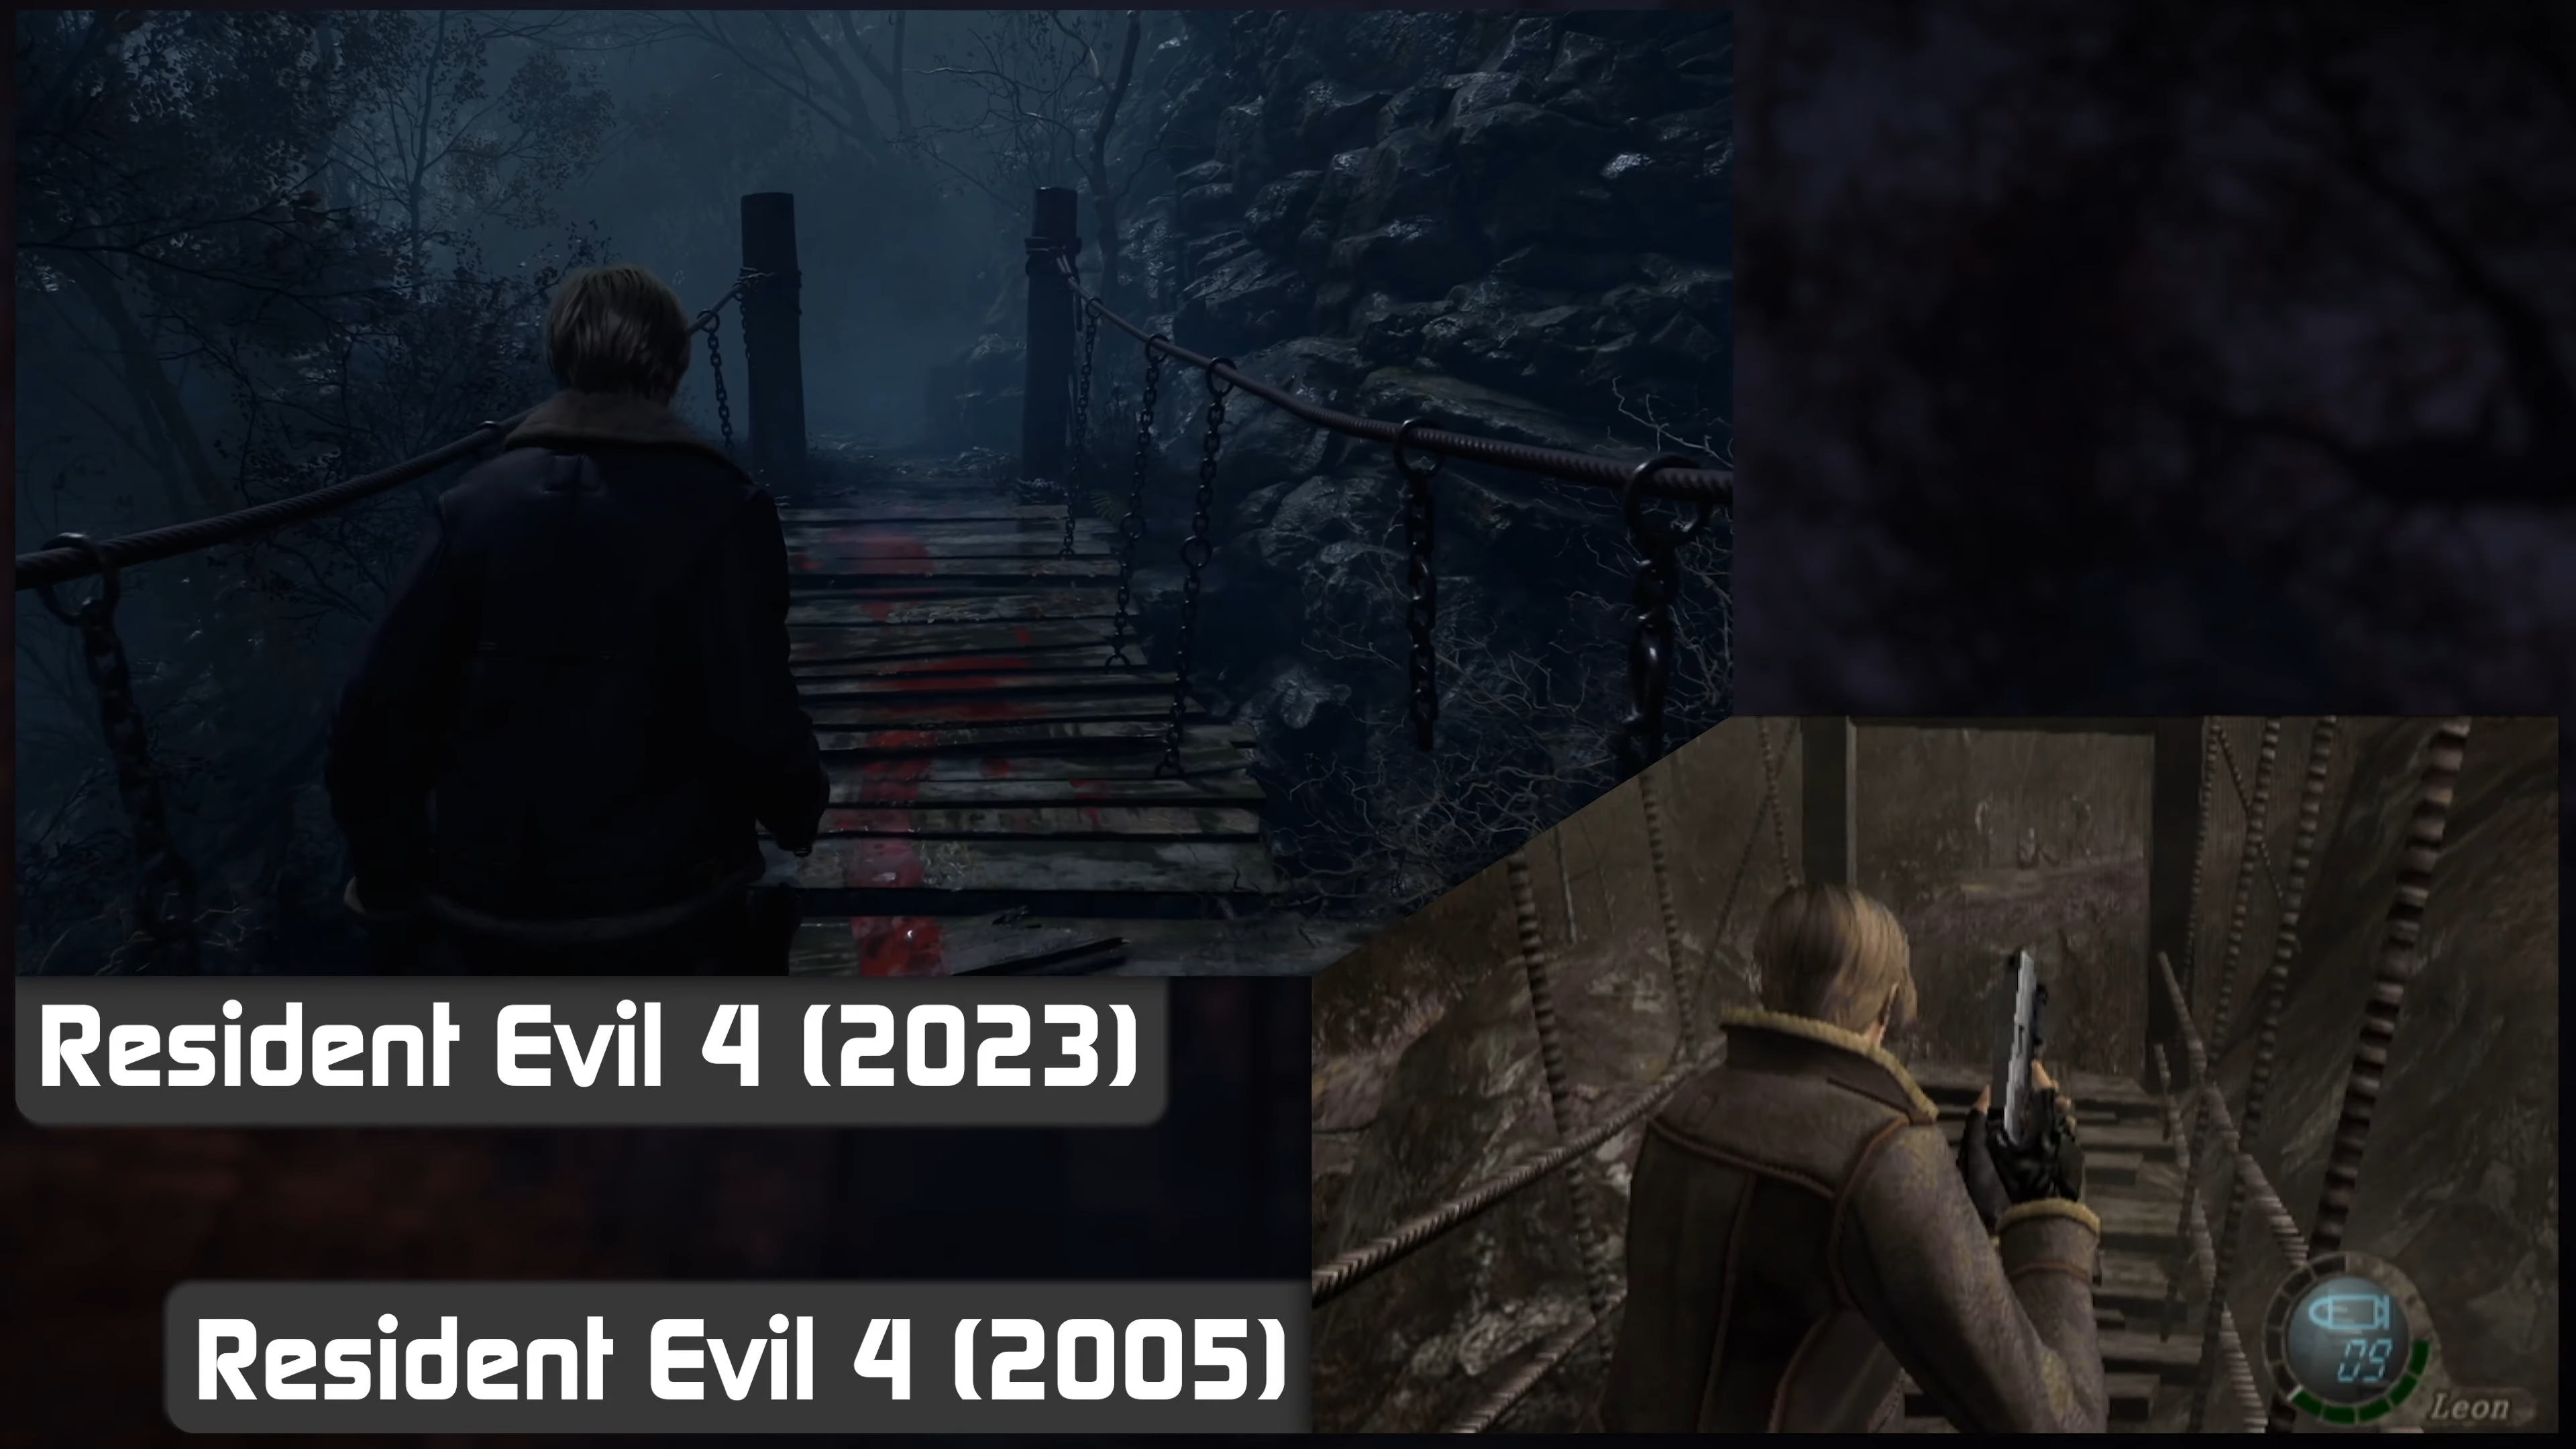 Résident Evil 2005 vs RE4 2023